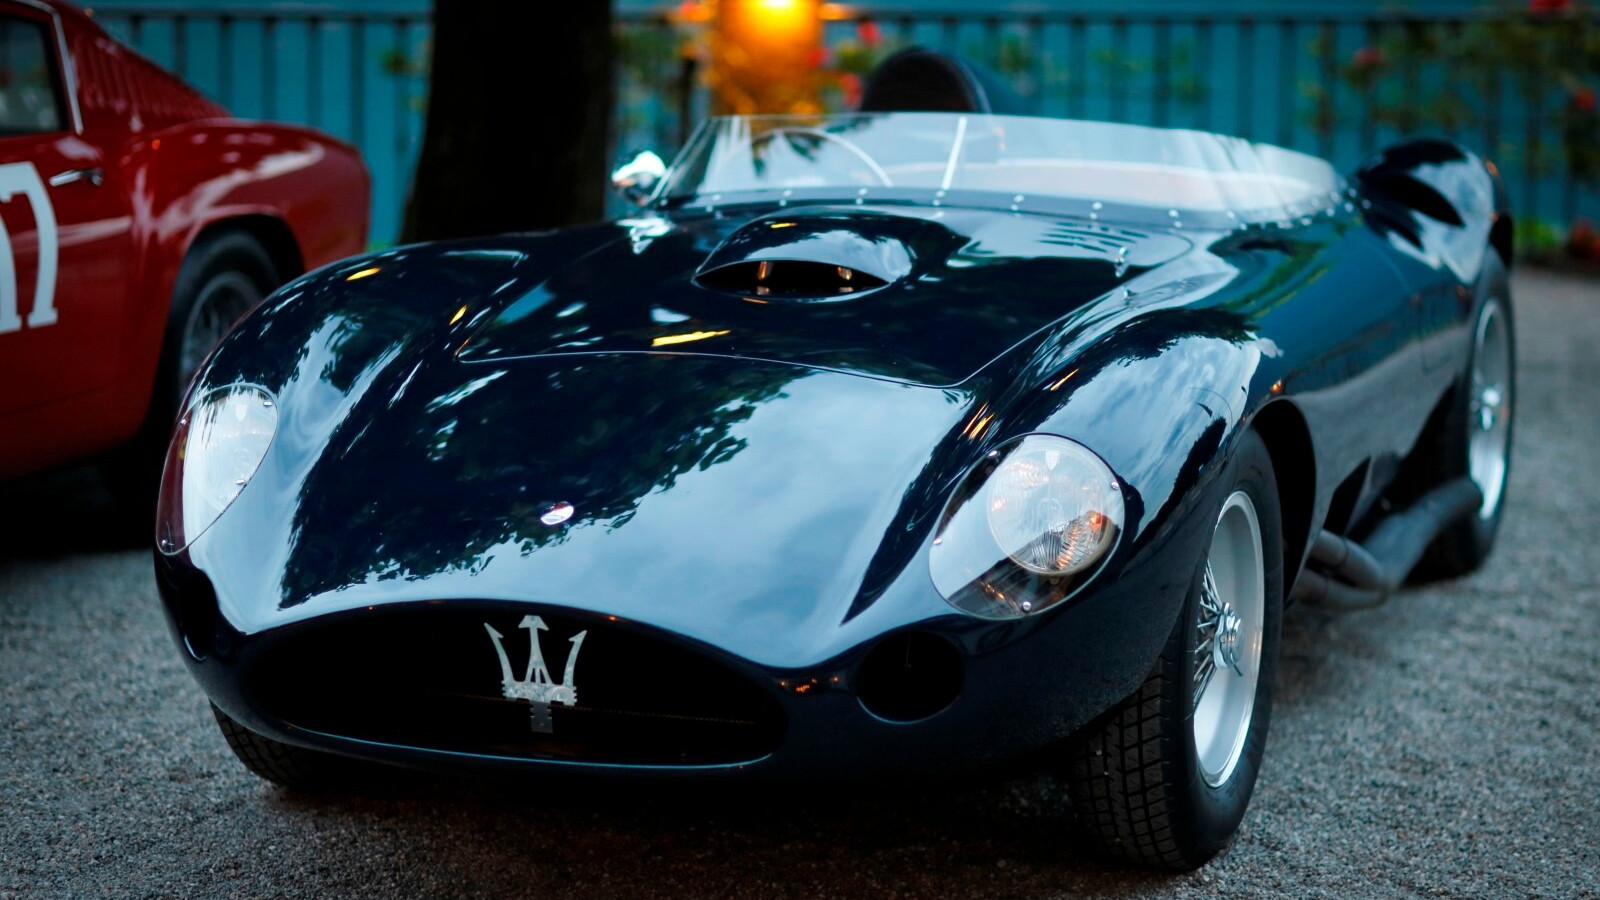 1956 Maserati 450S at the Concorso d’Eleganza Villa d'Este 2014